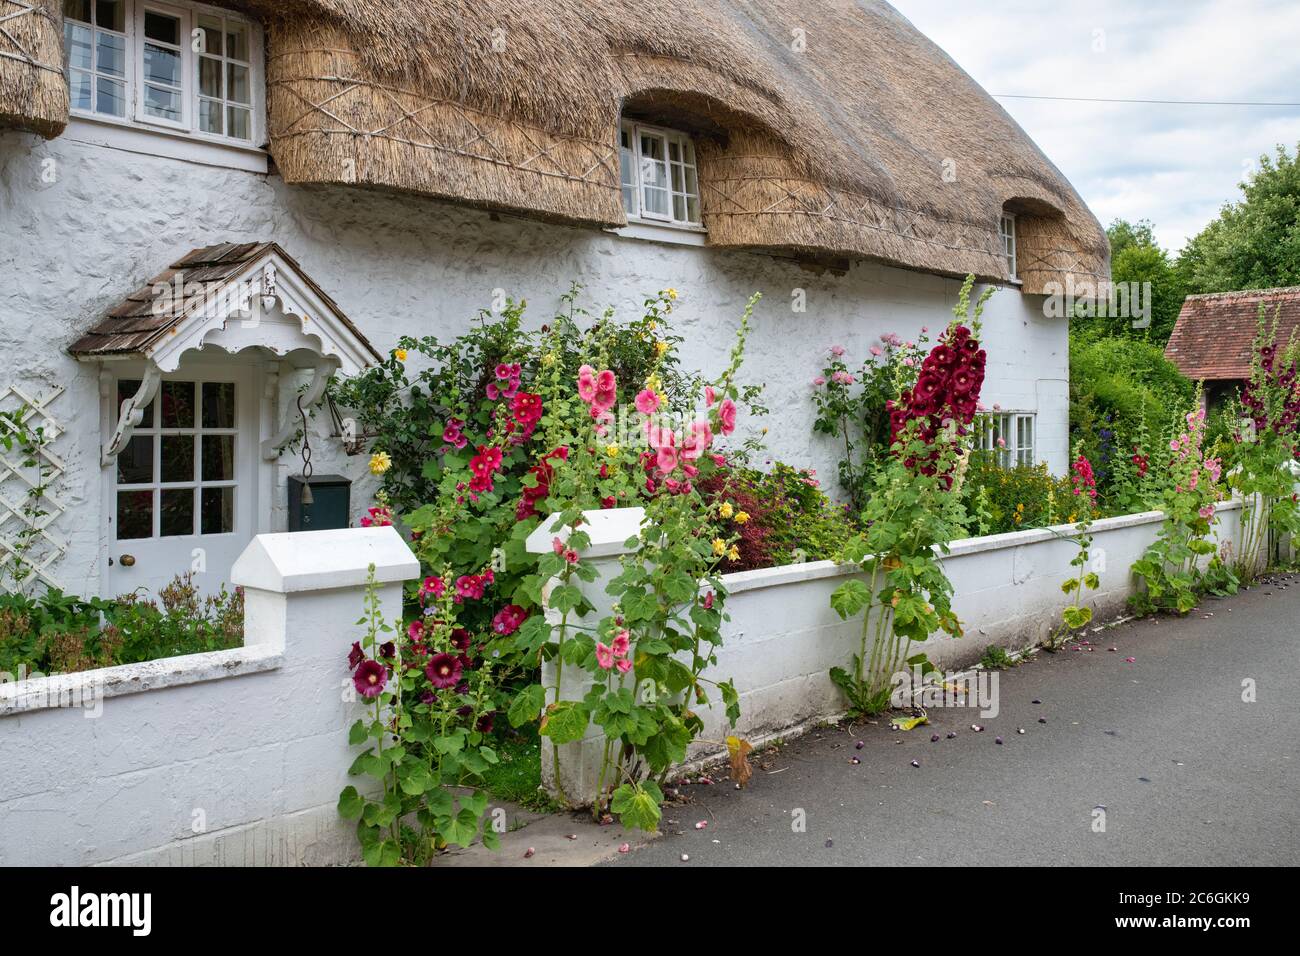 Alcea rosea. Il est situé à l'extérieur d'un cottage en chaume à Avebury. Wiltshire, Angleterre Banque D'Images